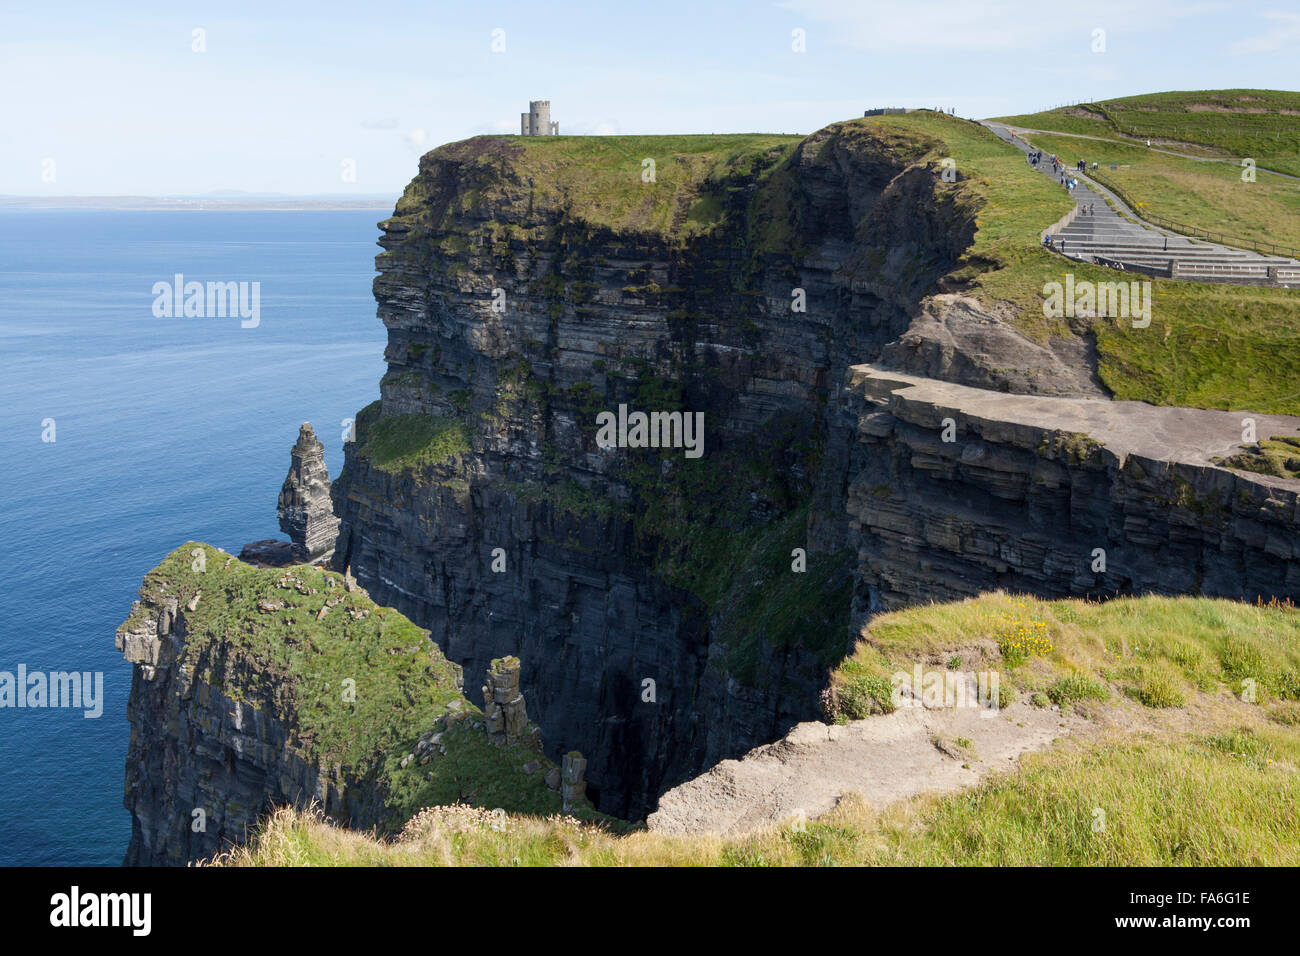 Las espectaculares vistas del Atlántico, en los Acantilados de Moher, en la costa occidental de Irlanda, un destino turístico popular. Foto de stock